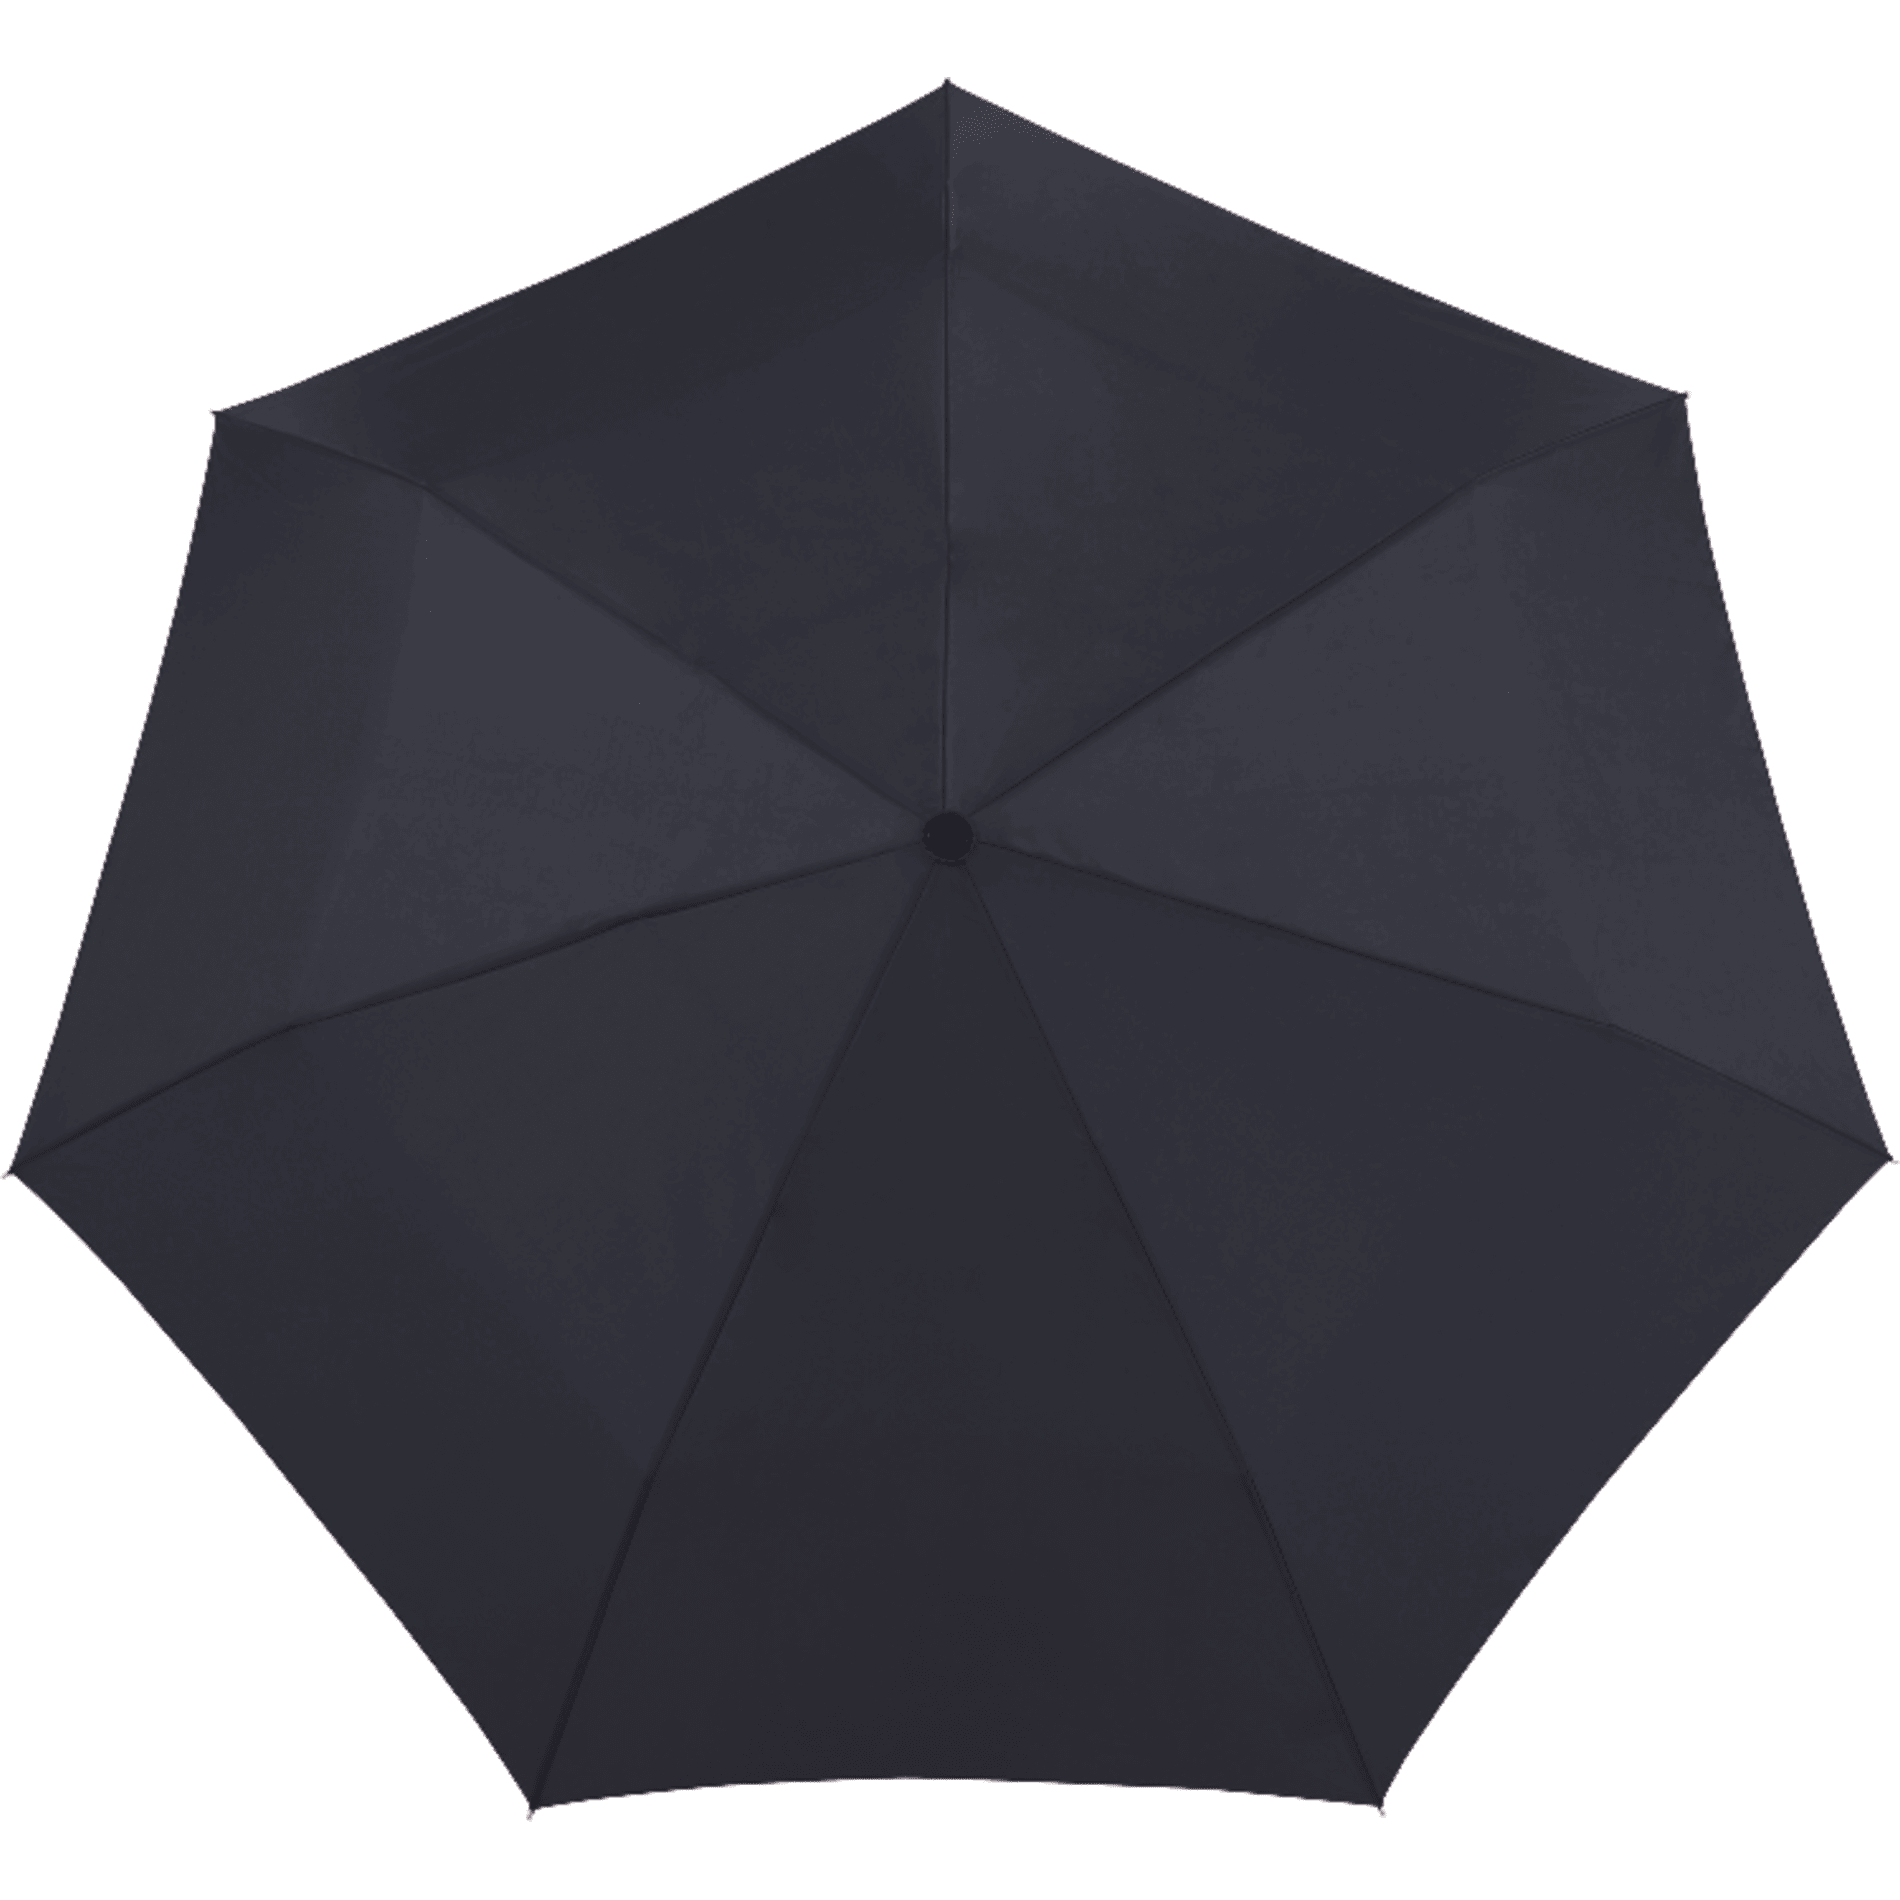 Brellerz Dome Auto Open Umbrella Clear with Black Trim 